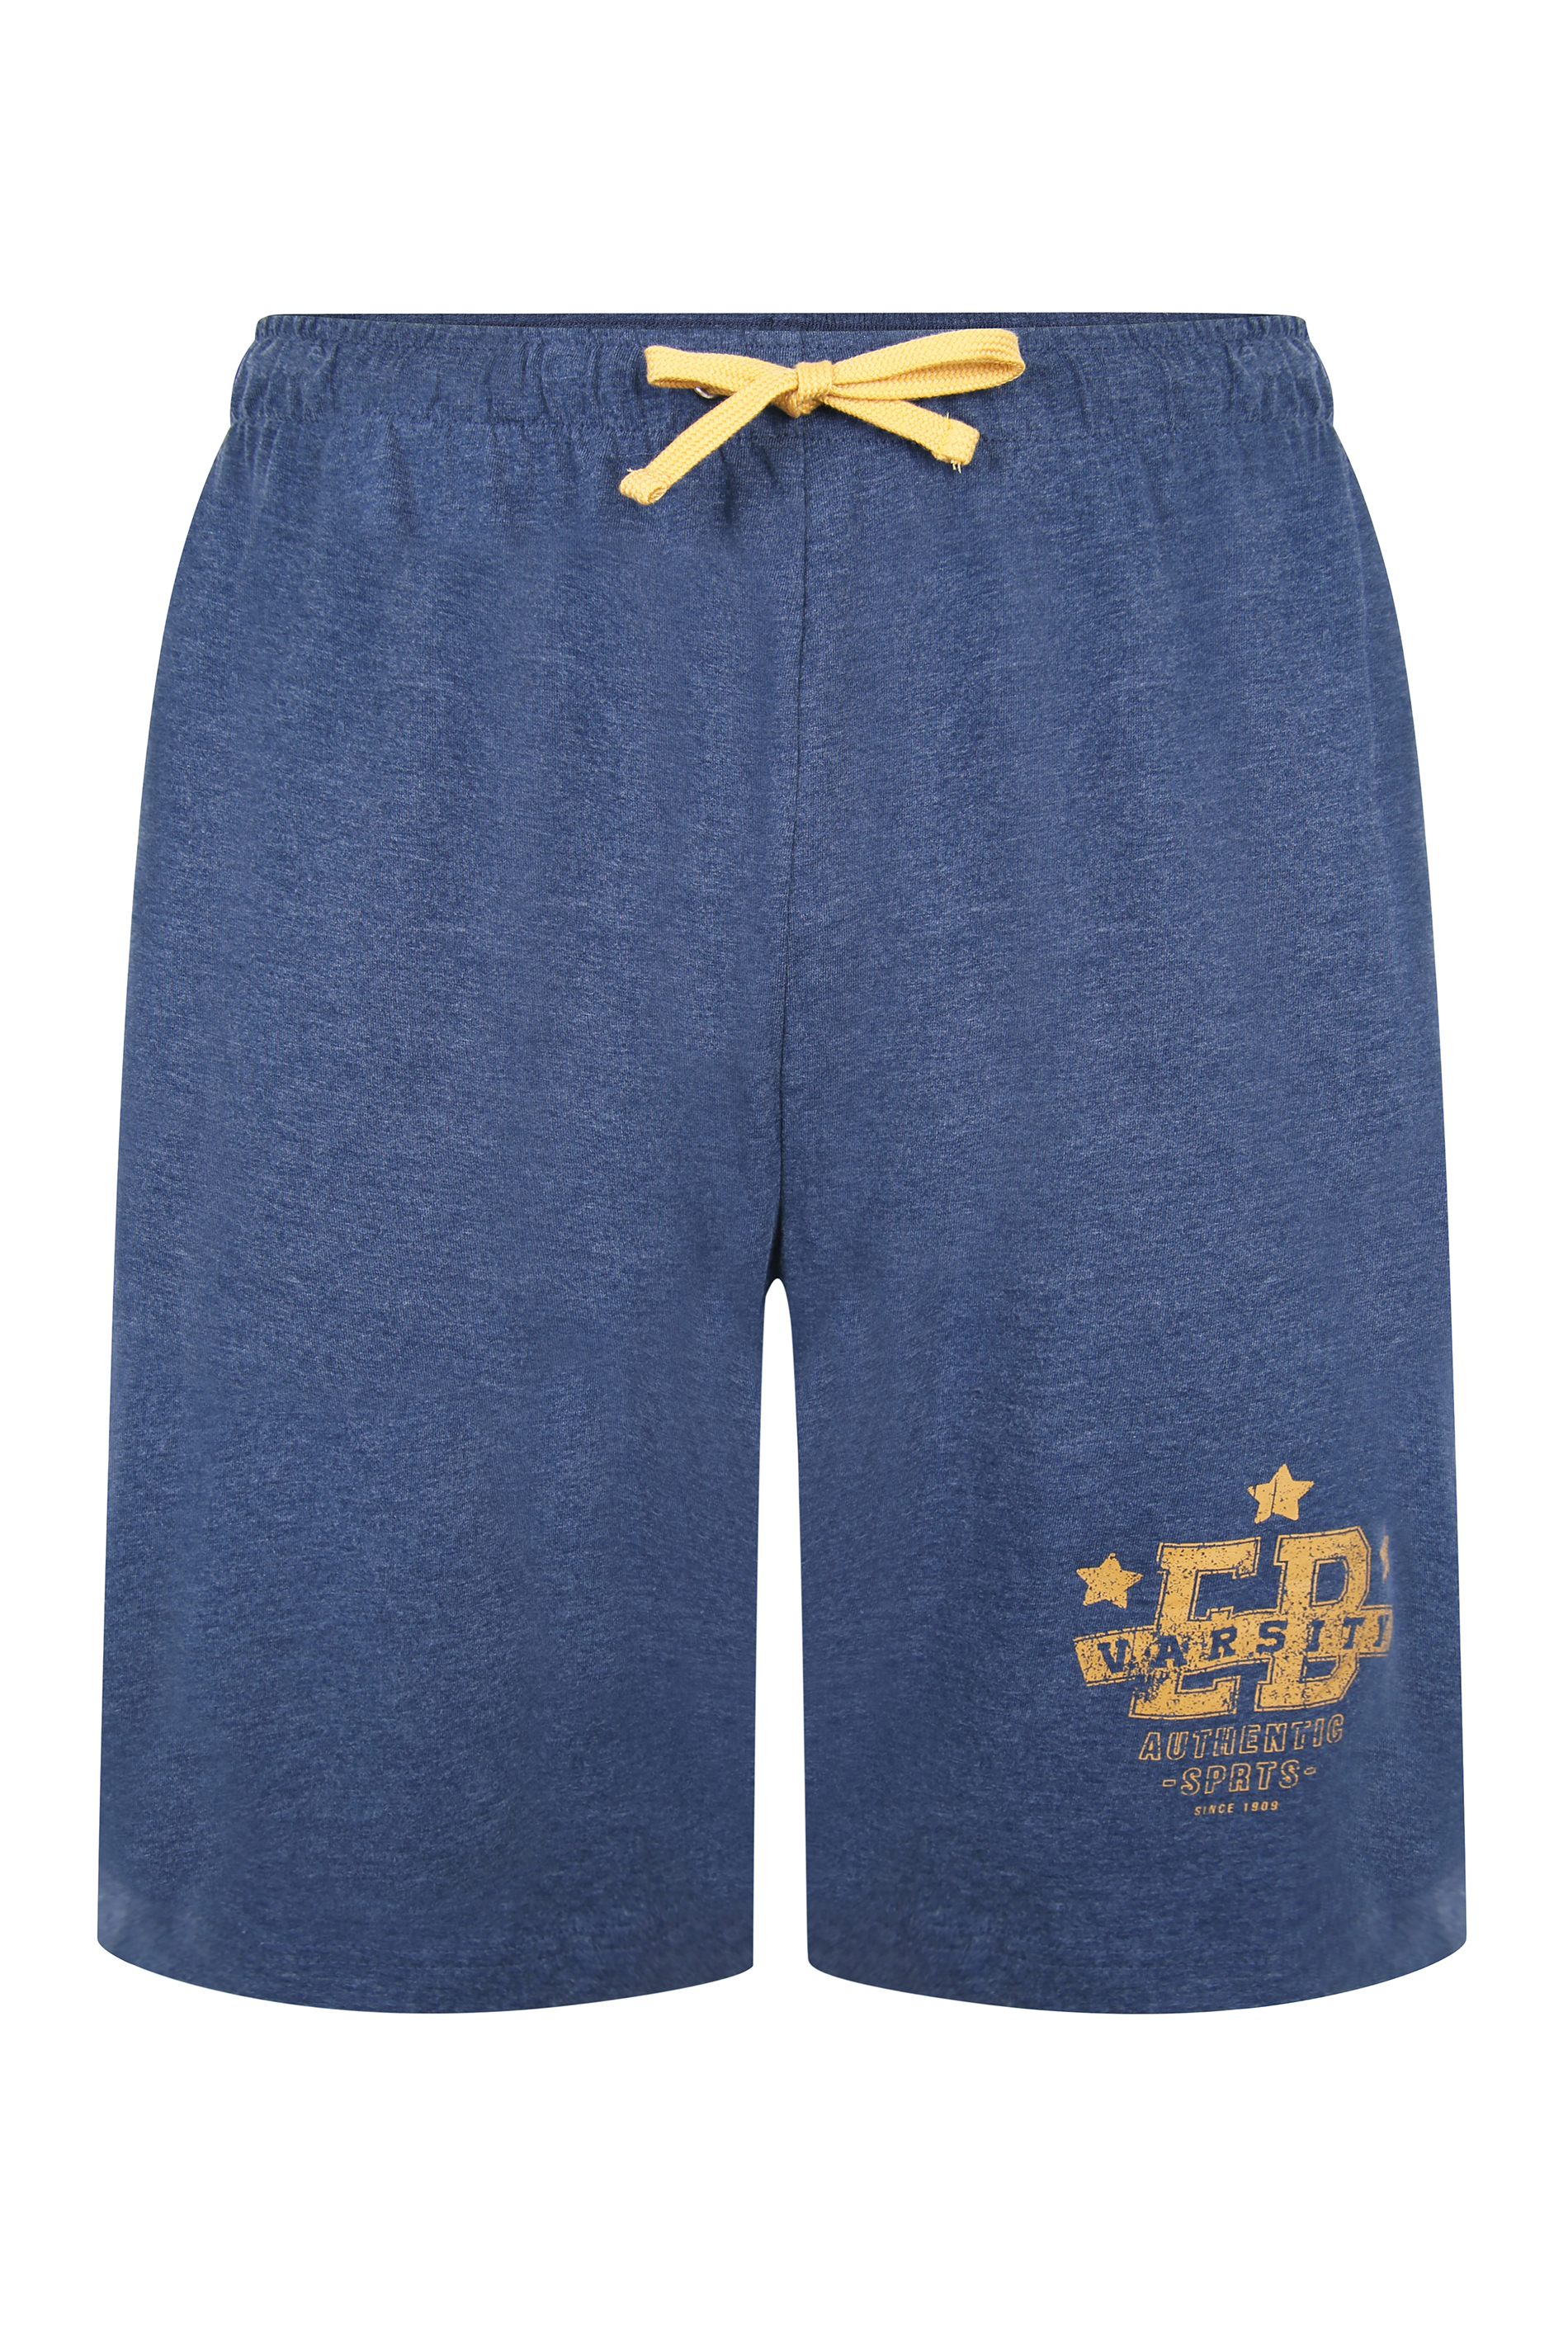 ED BAXTER Blue Varsity Shorts_F.jpg